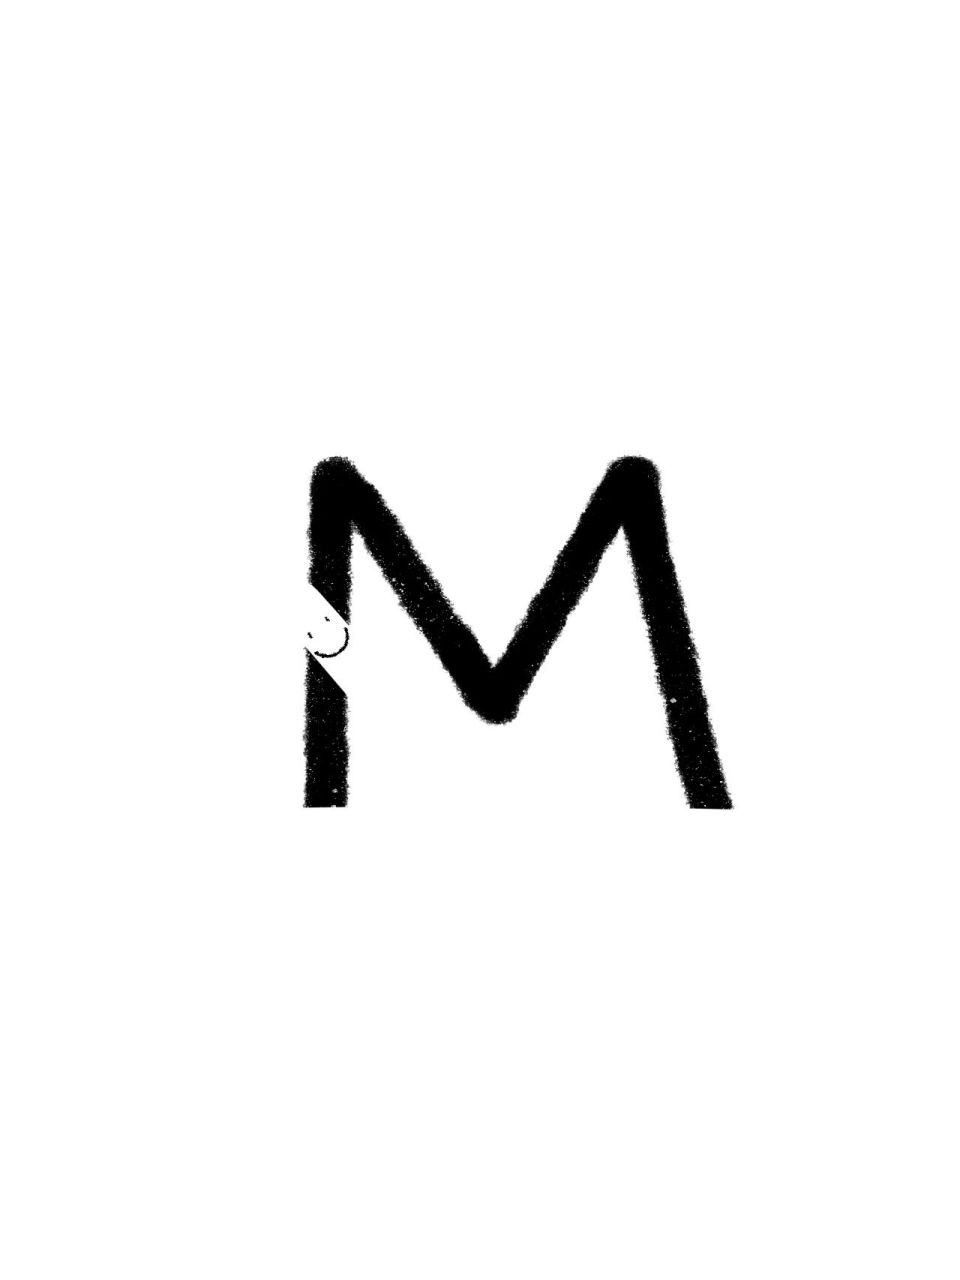 字母m的笔画图片